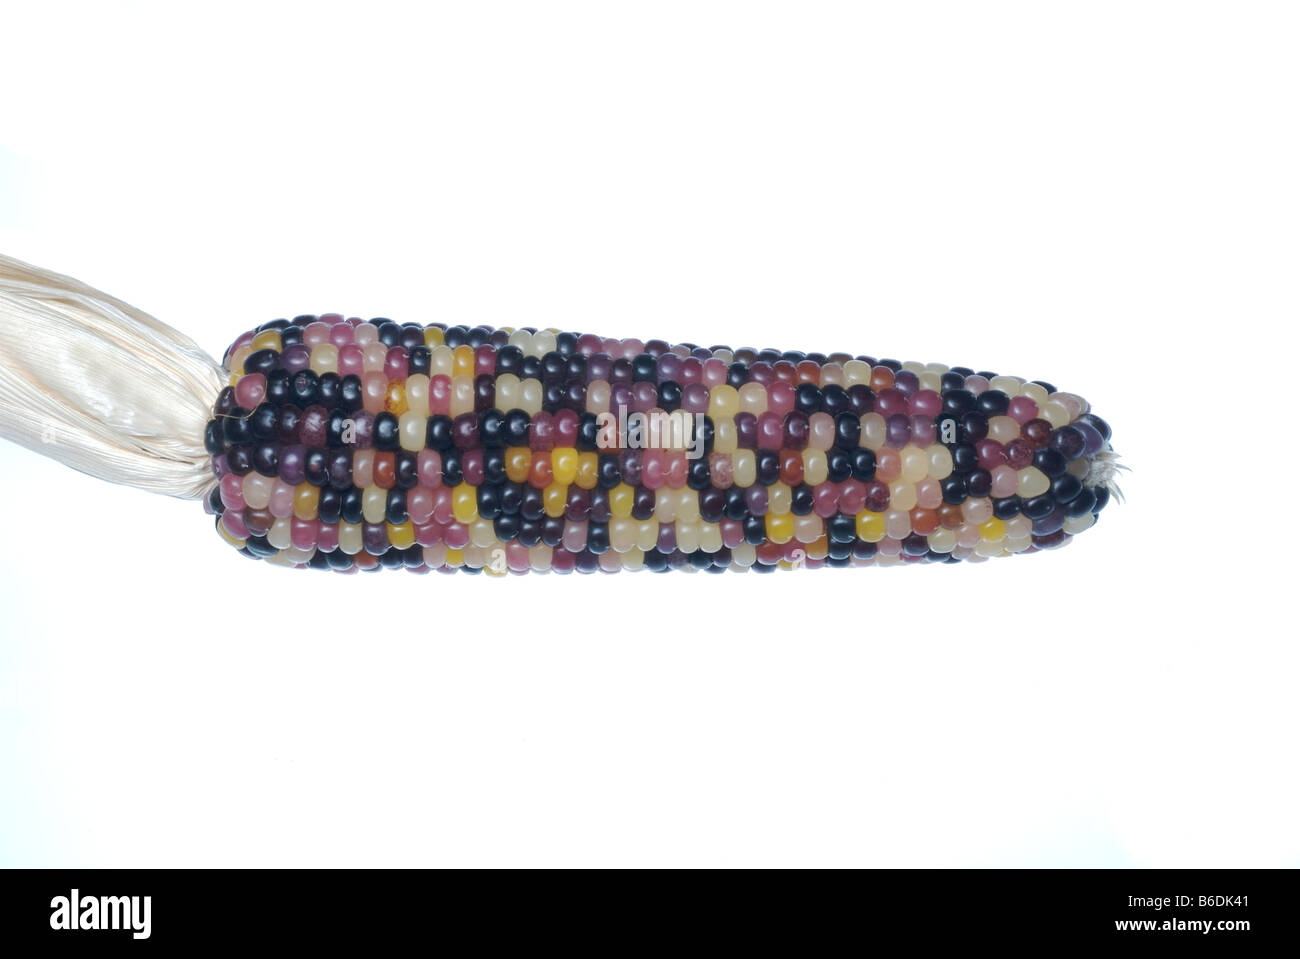 Multicolored corn ear. Stock Photo